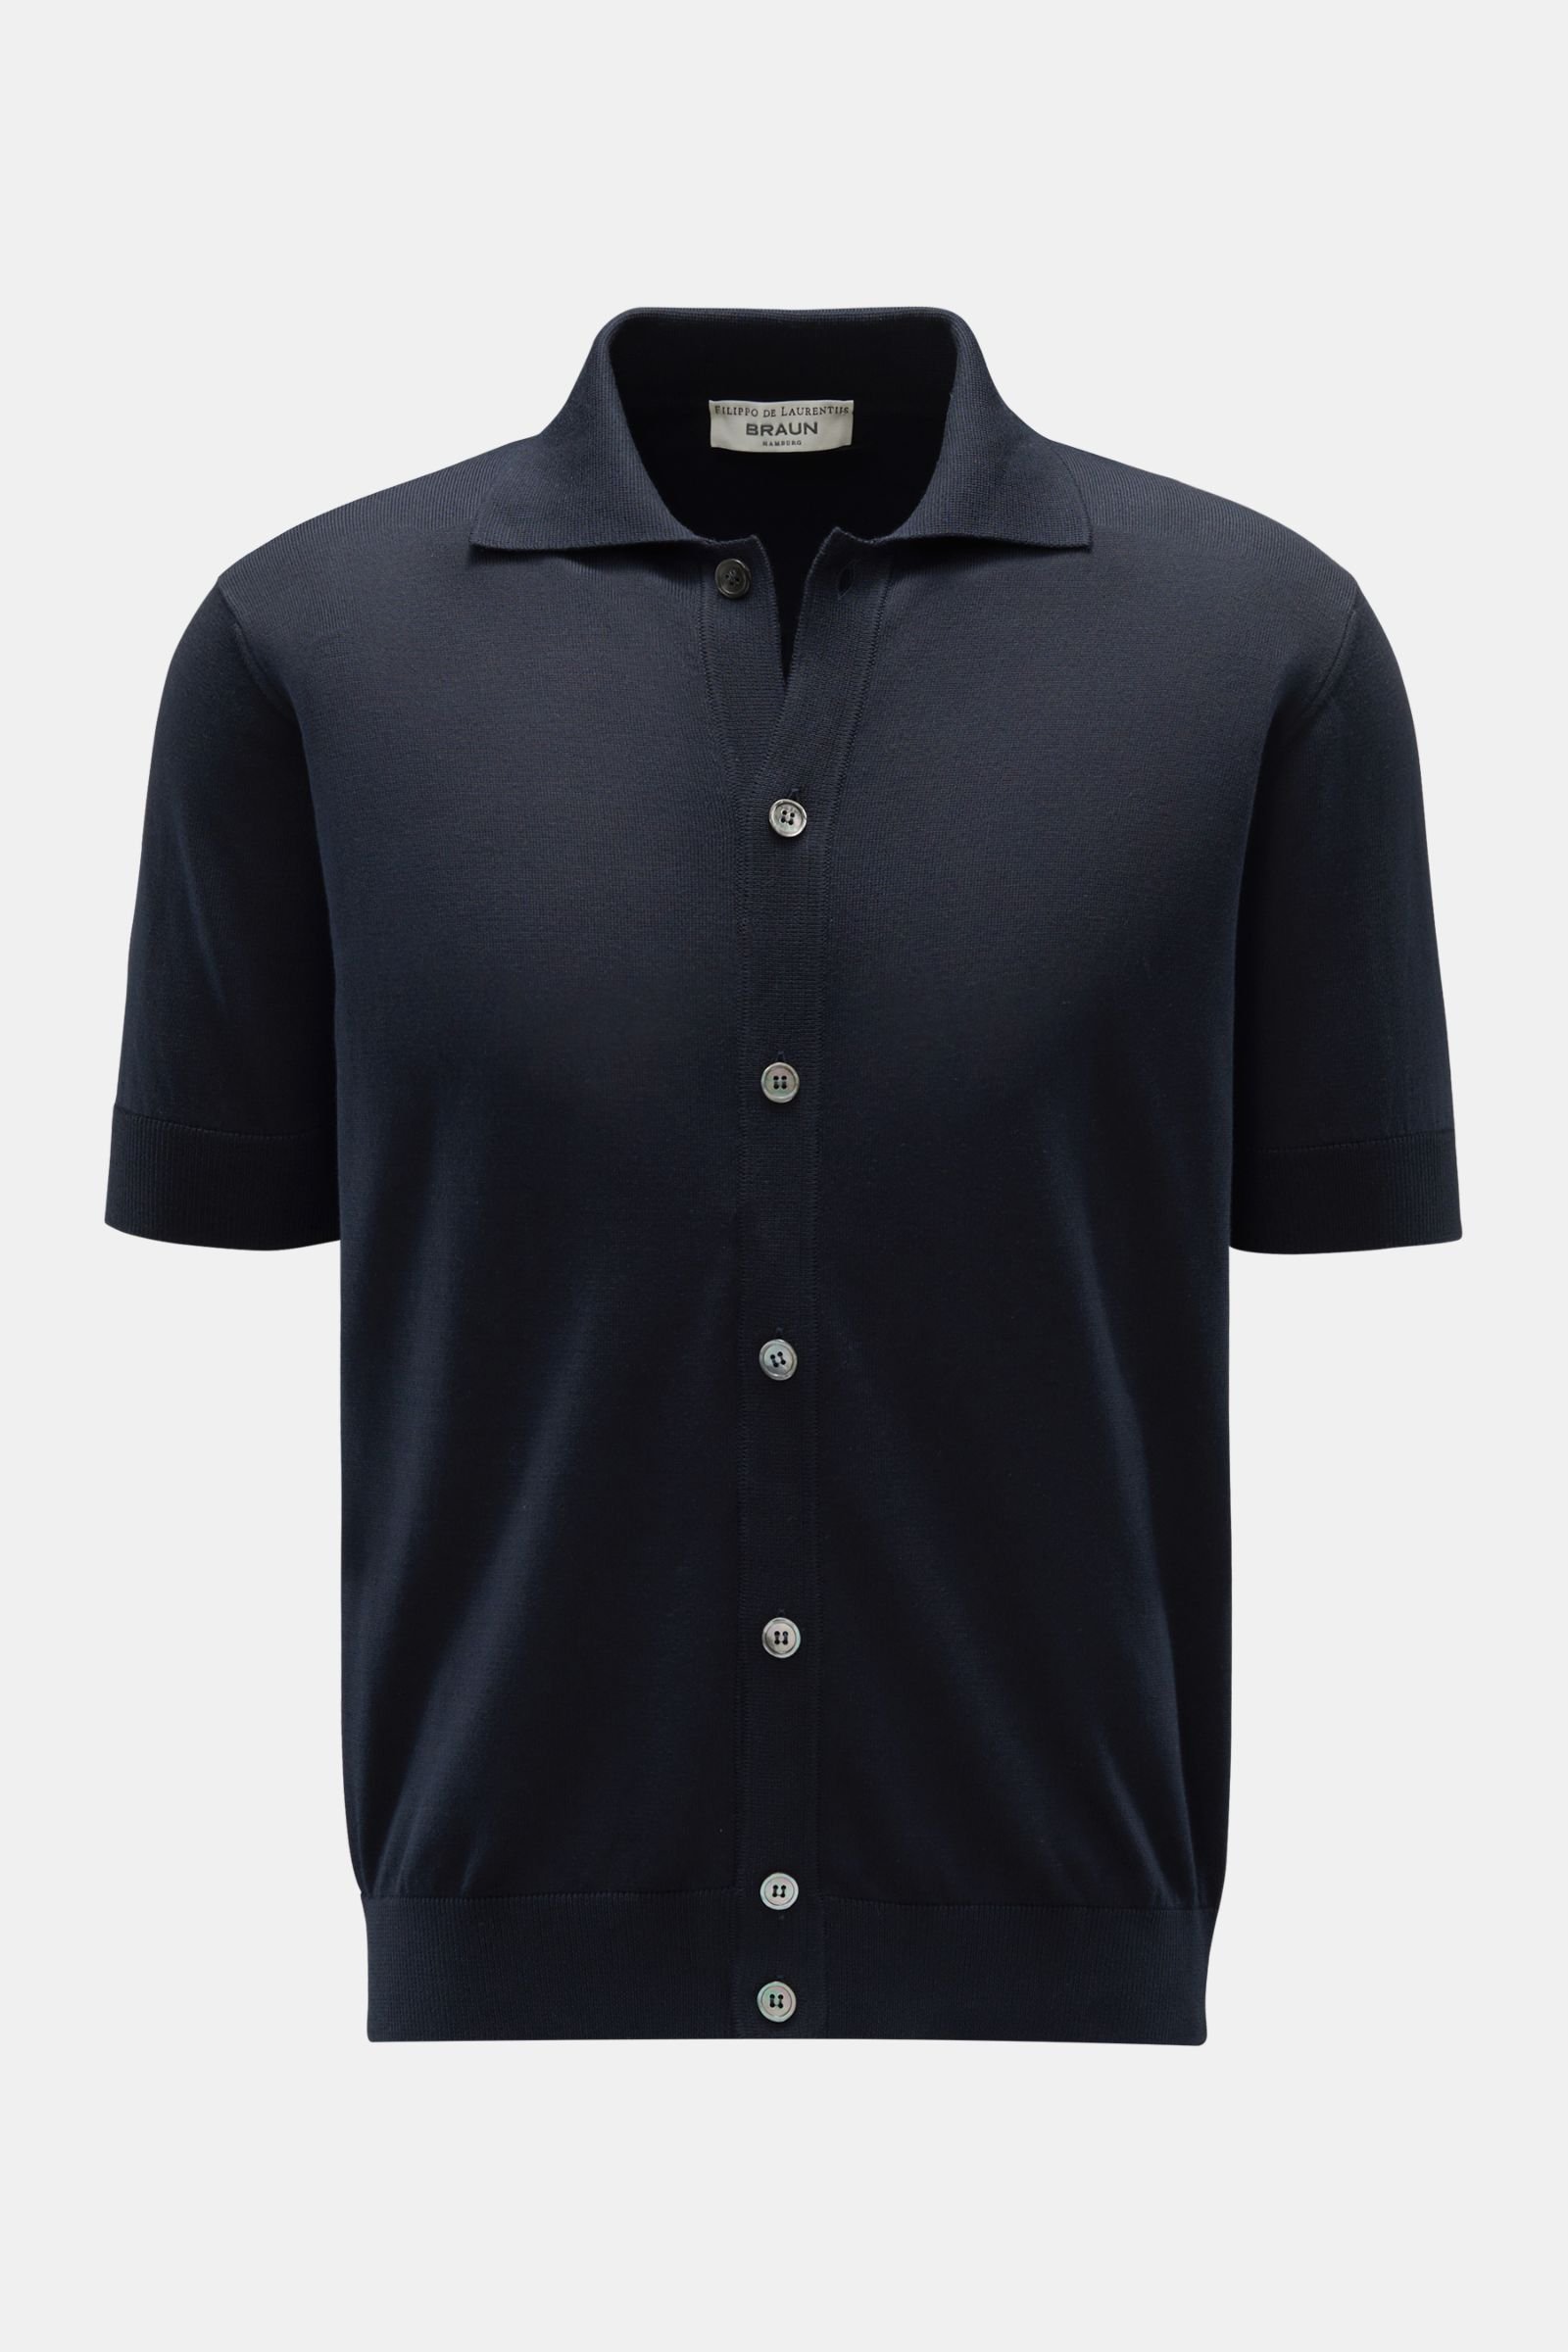 Short sleeve knit shirt narrow collar dark navy